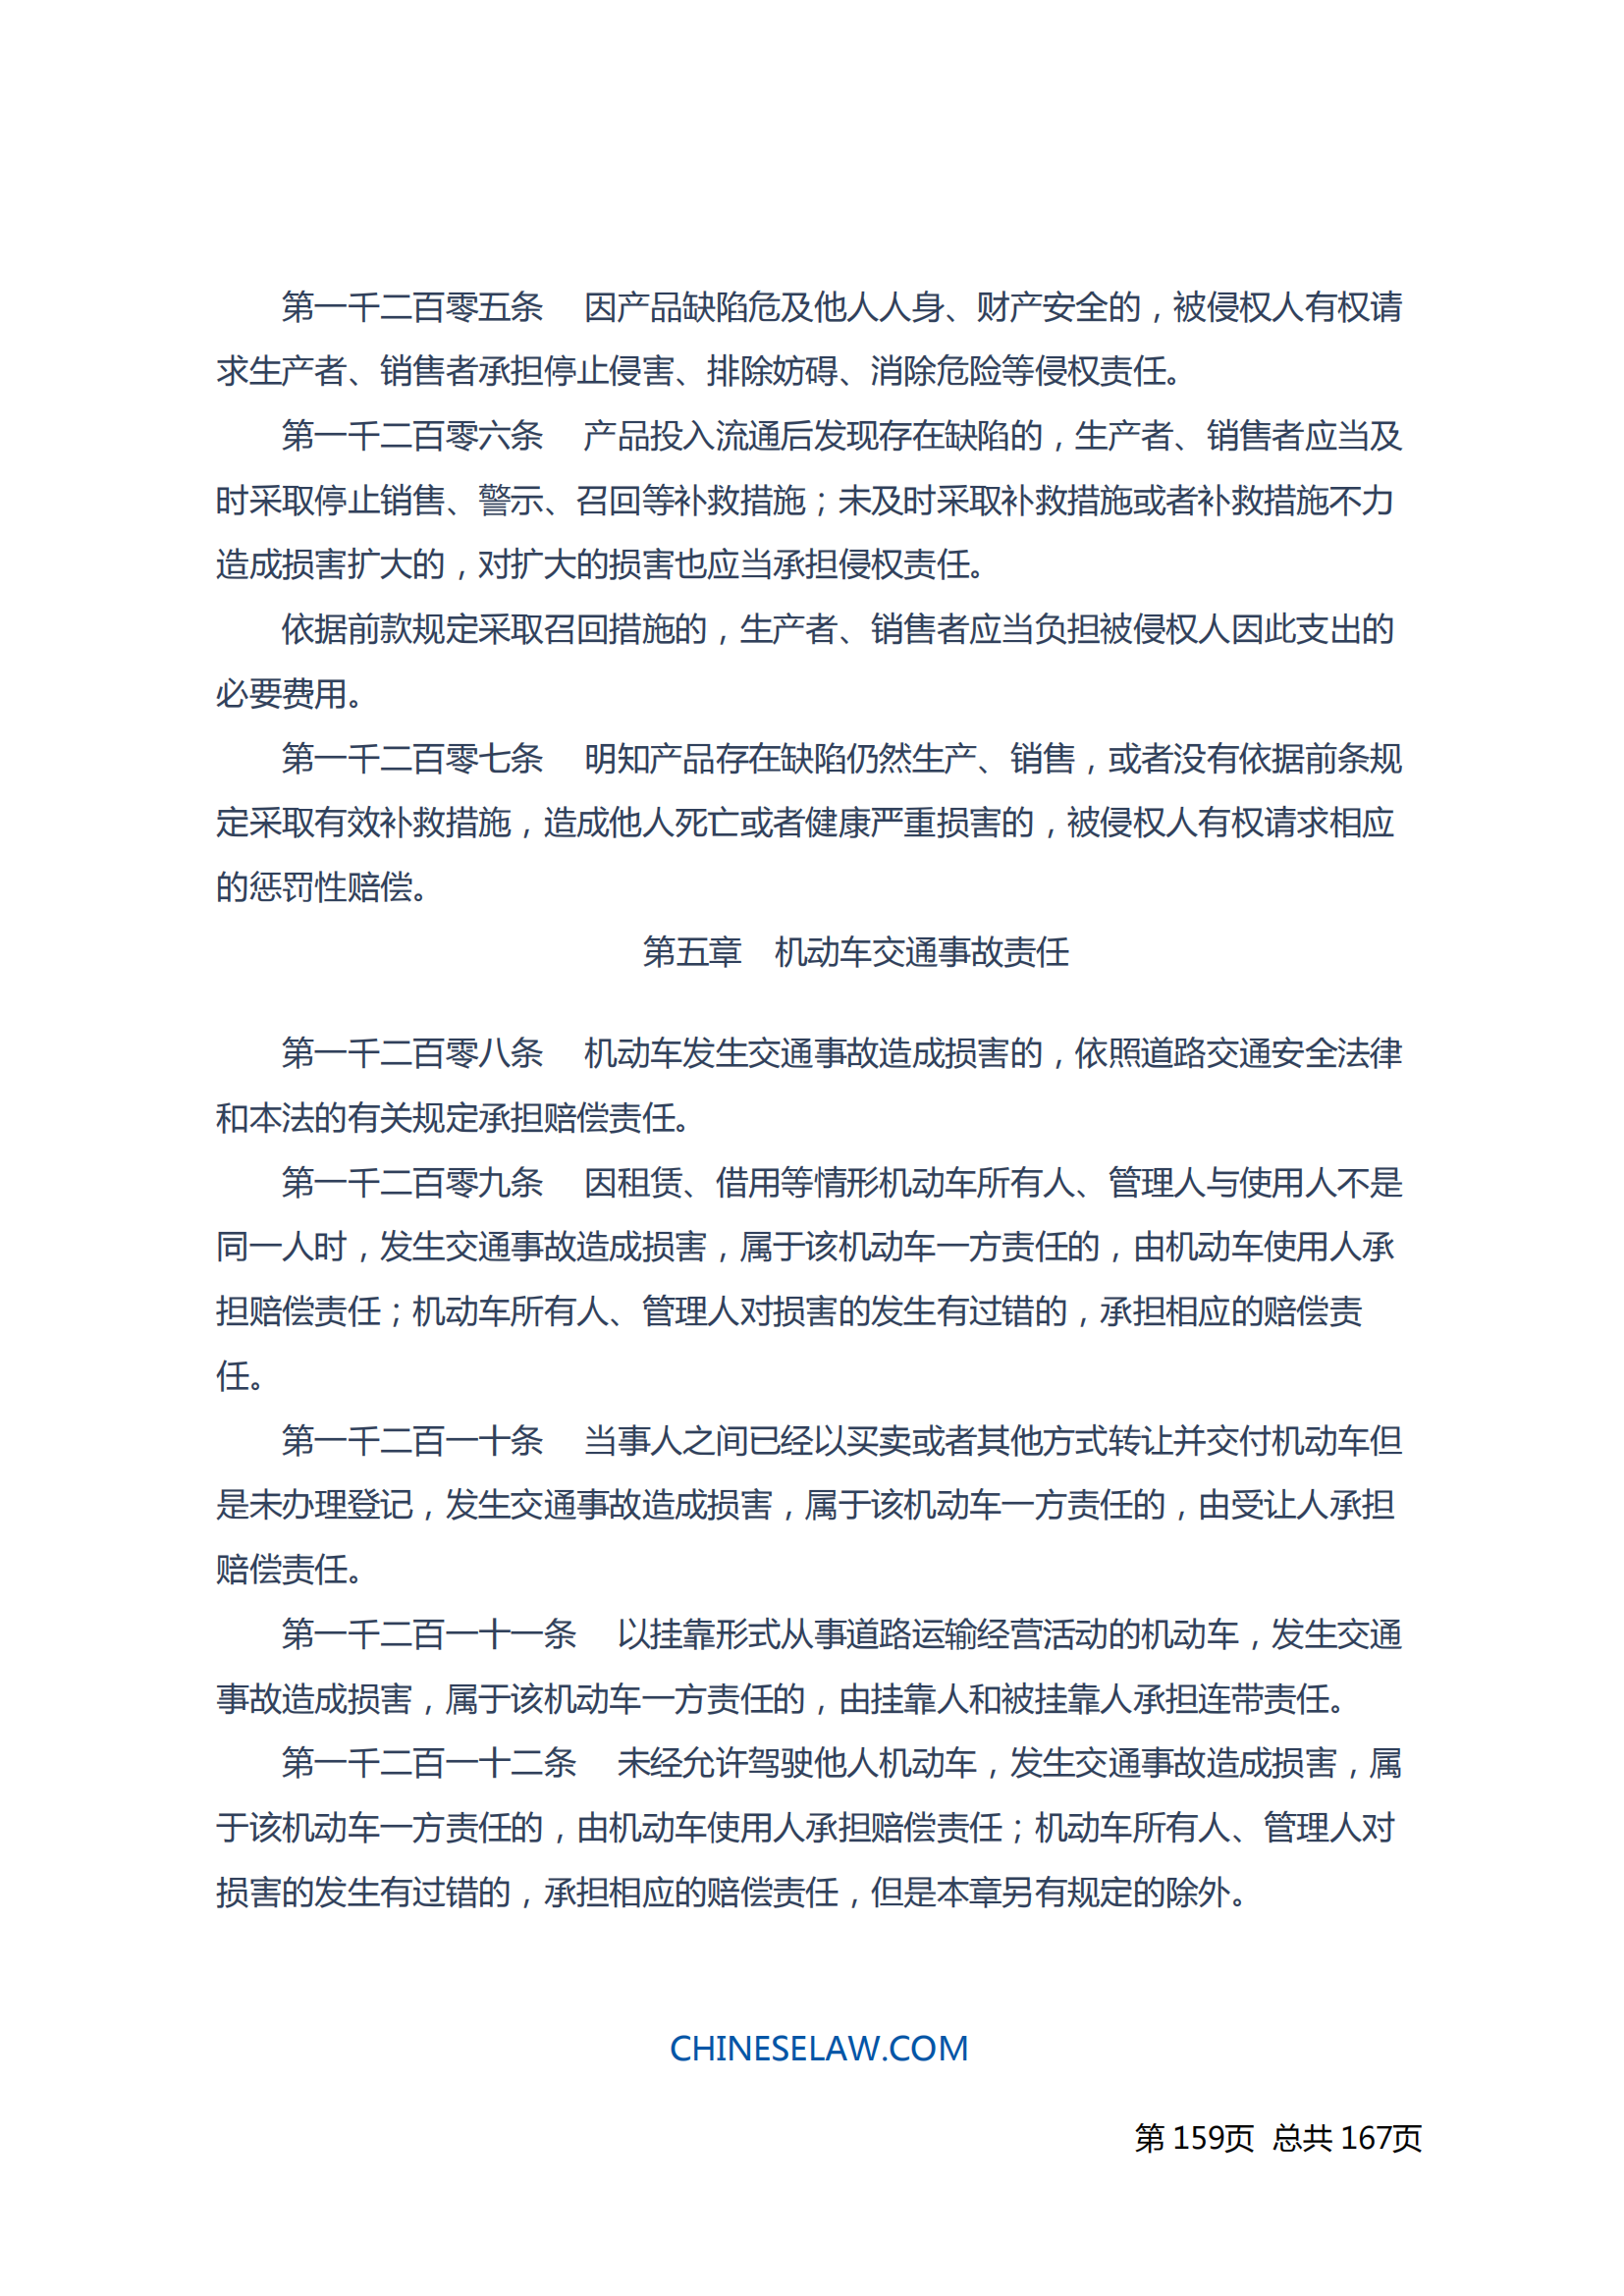 中华人民共和国民法典_158